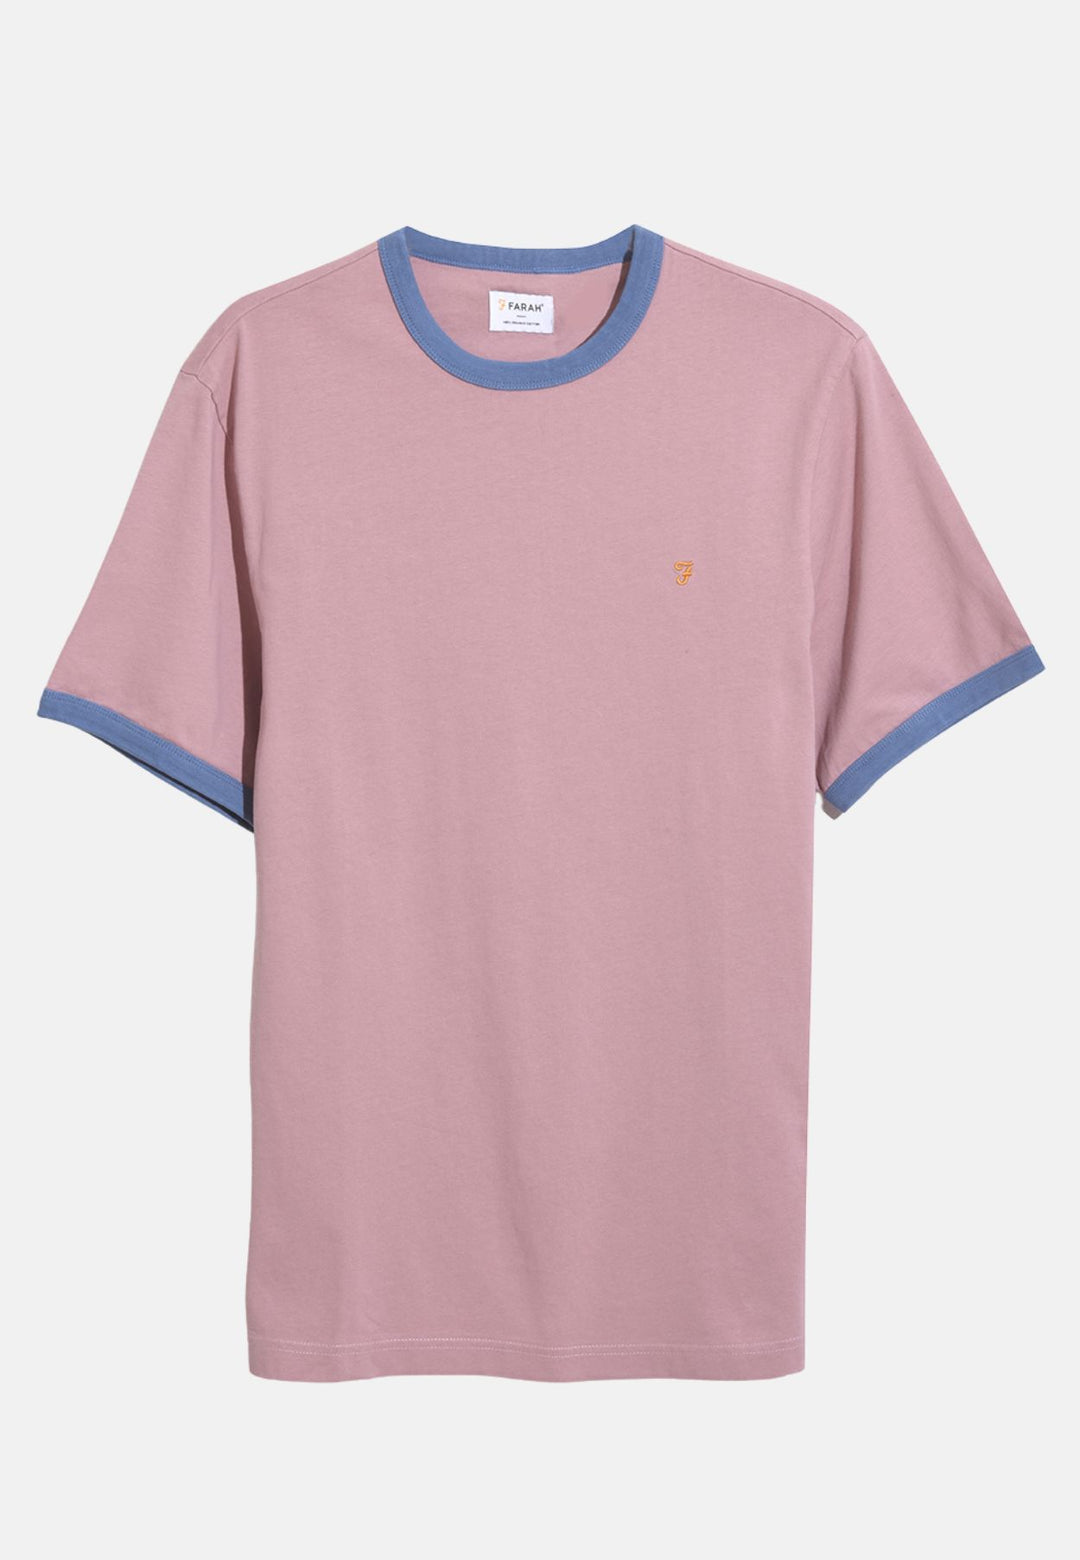 Men's Farah Groves Ringer T-Shirt in Pink